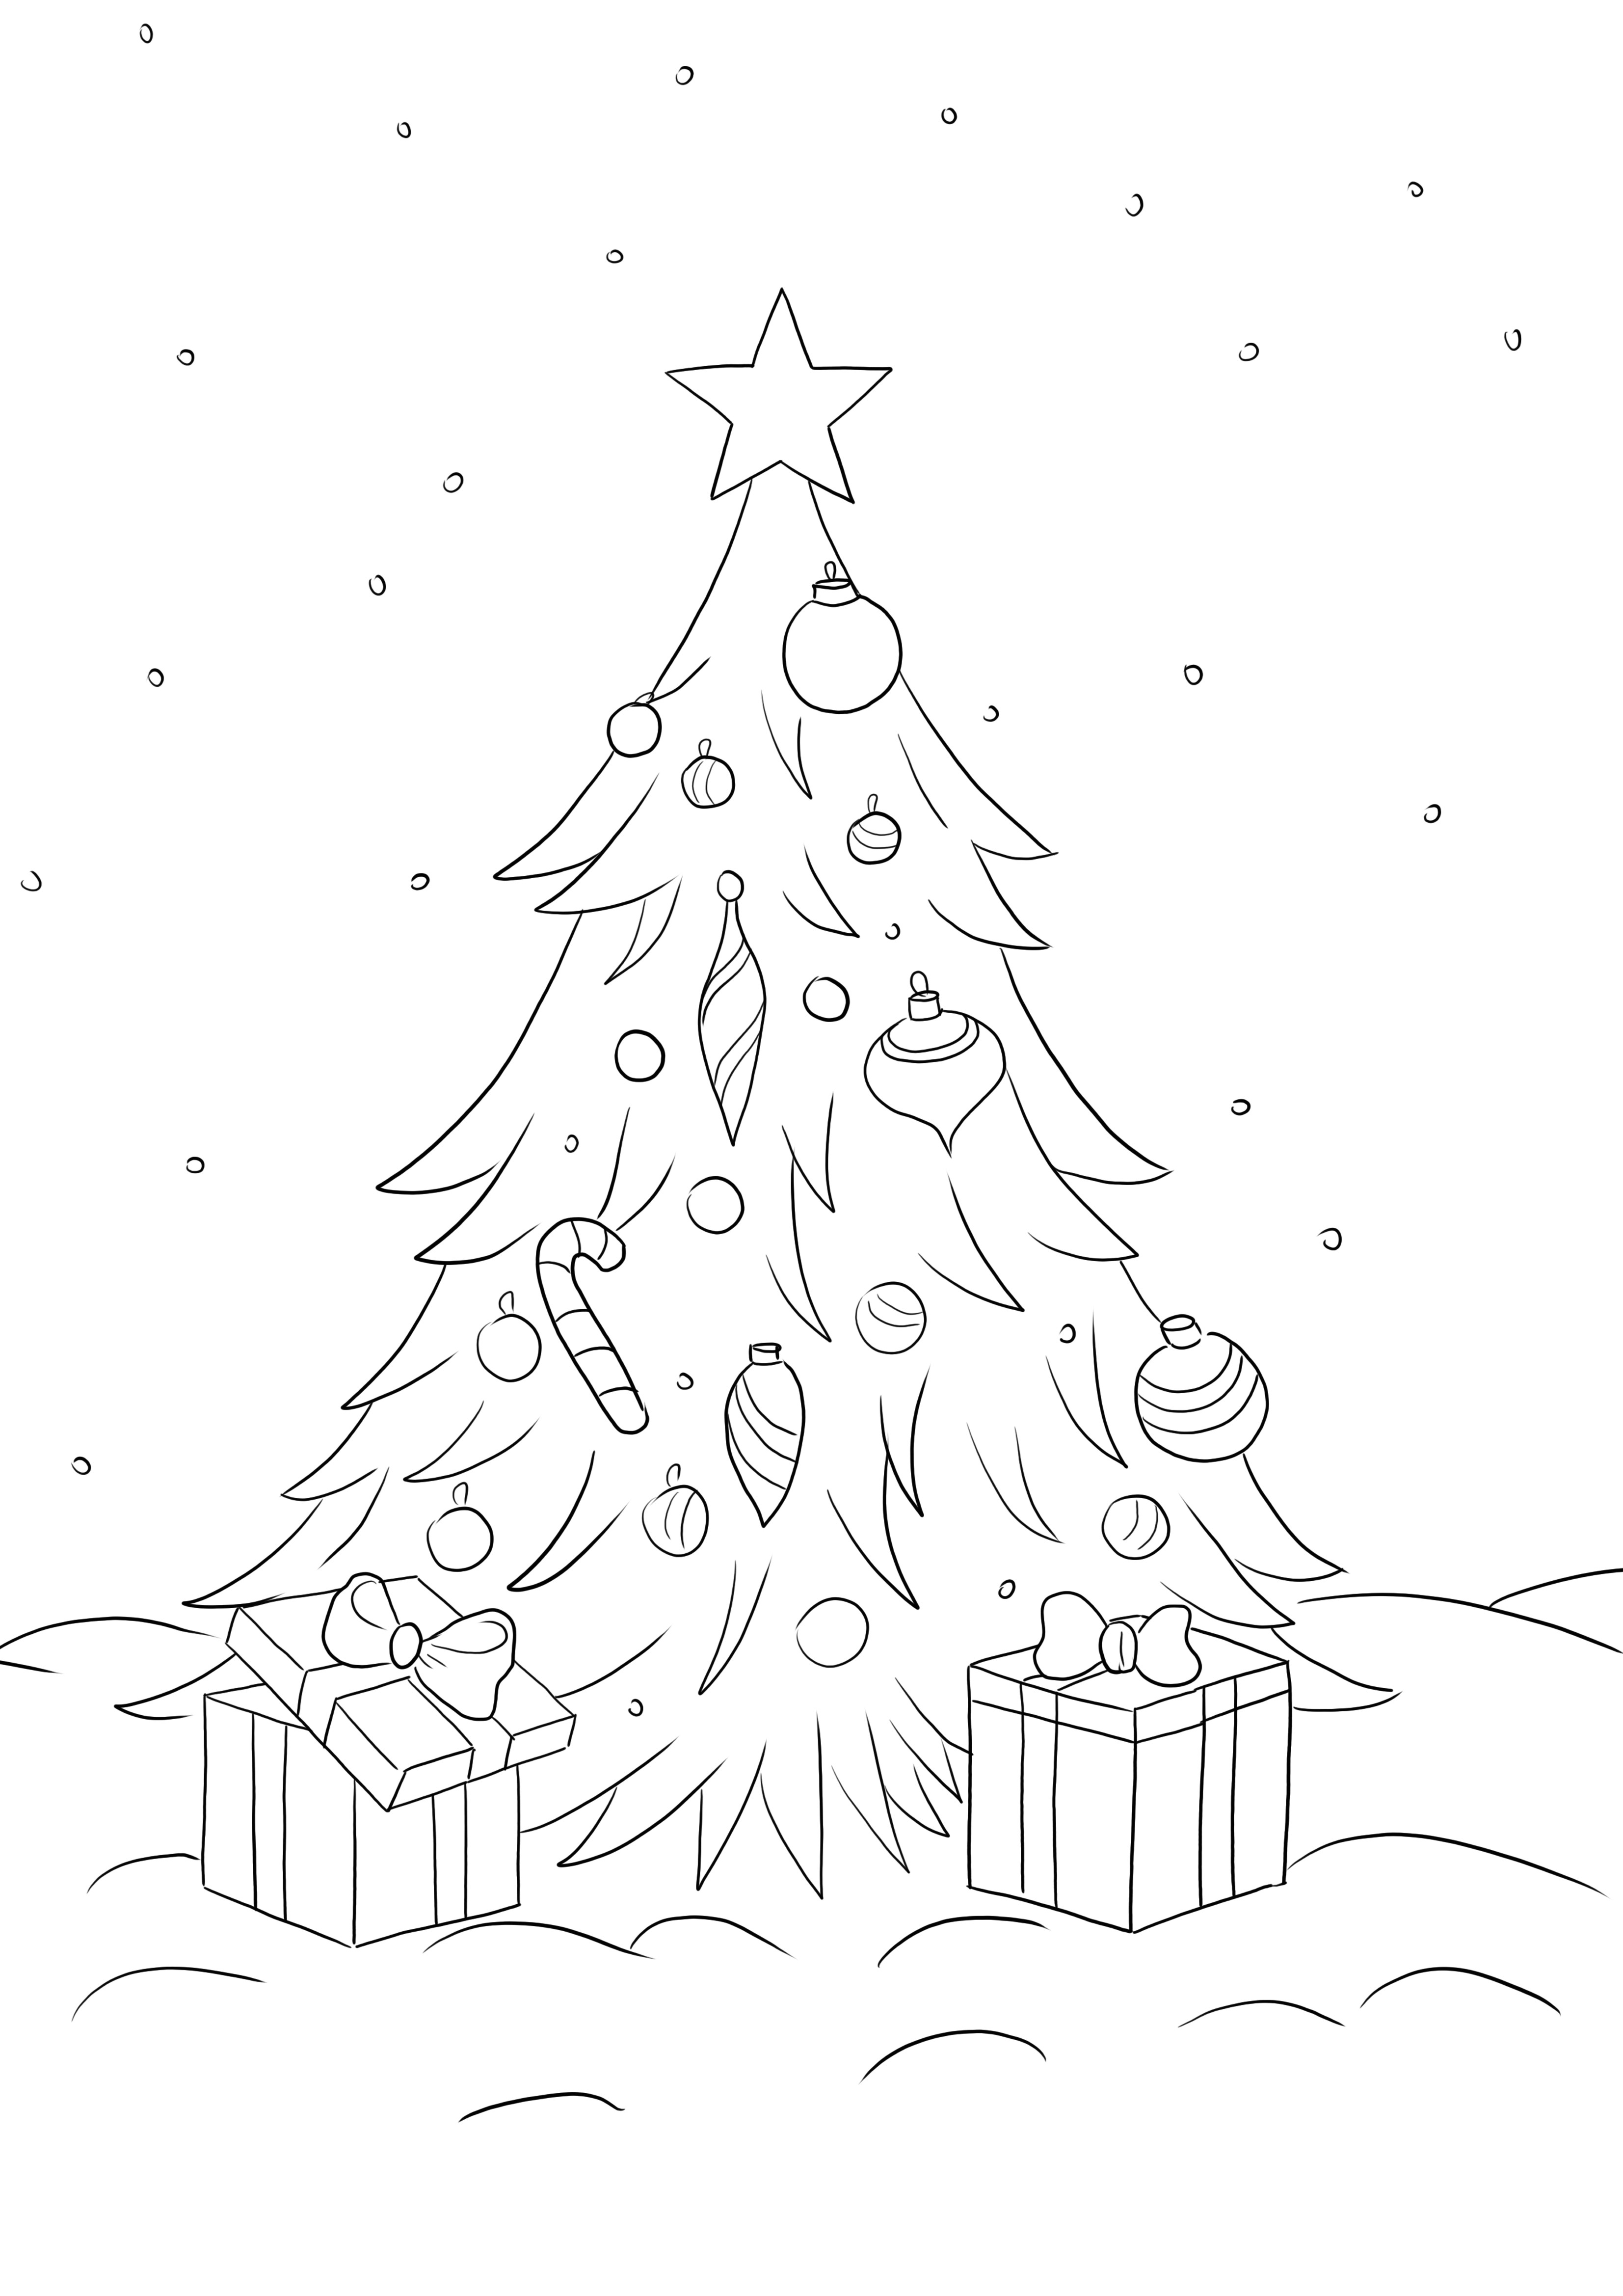 A Árvore de Natal com Presentes é gratuita para ser baixada e colorida